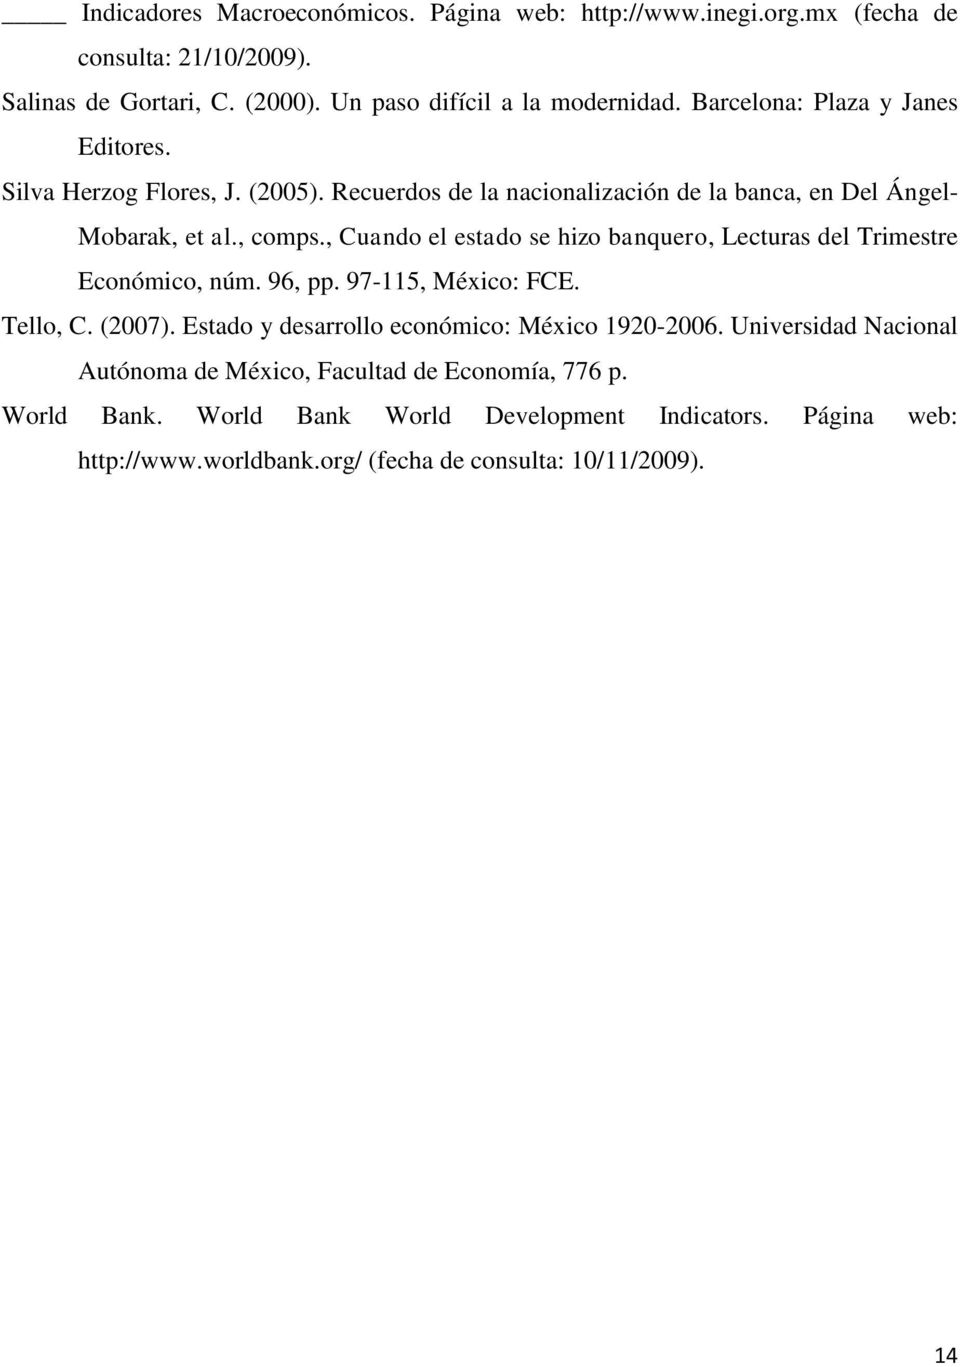 , Cuando el estado se hizo banquero, Lecturas del Trimestre Económico, núm. 96, pp. 97-115, México: FCE. Tello, C. (27). Estado y desarrollo económico: México 192-26.